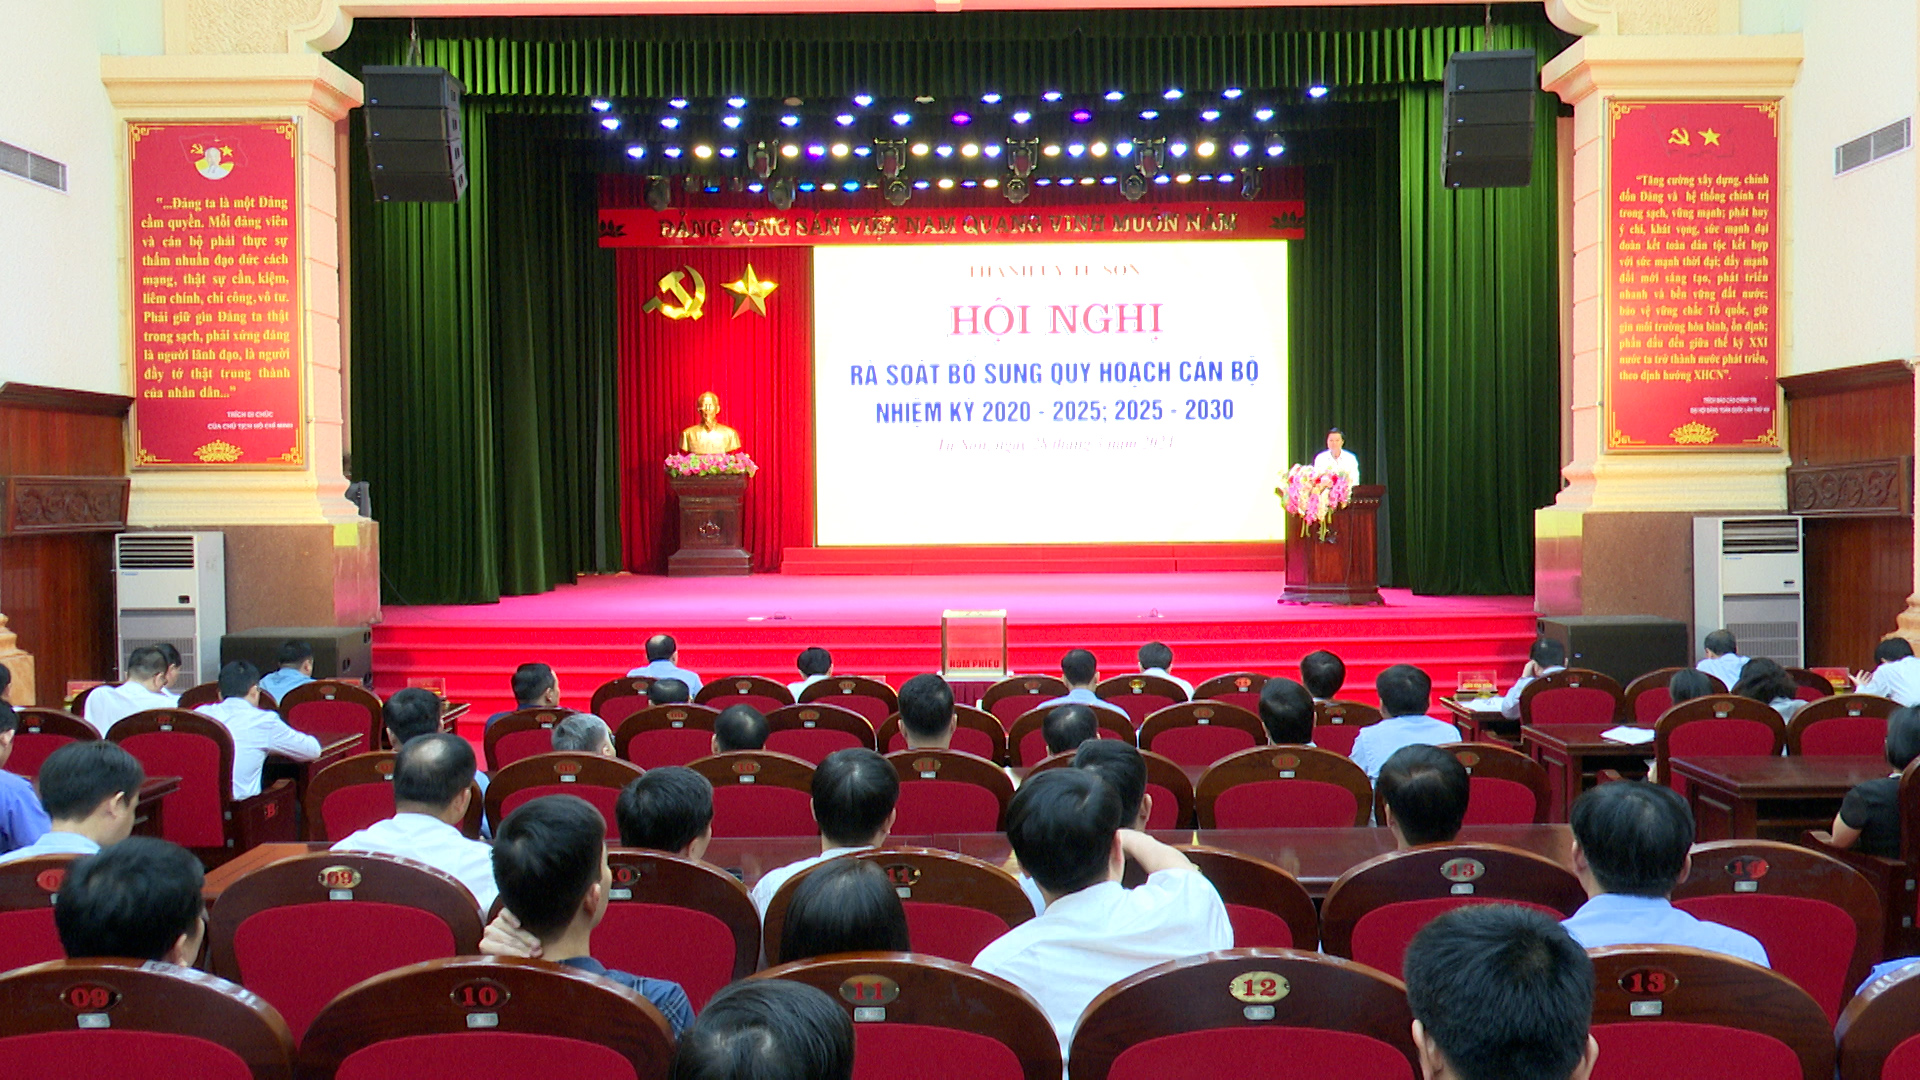 Thành ủy Từ Sơn tổ chức Hội nghị rà soát bổ sung quy hoạch cán bộ nhiệm kỳ 2020-2025; 2025-2030